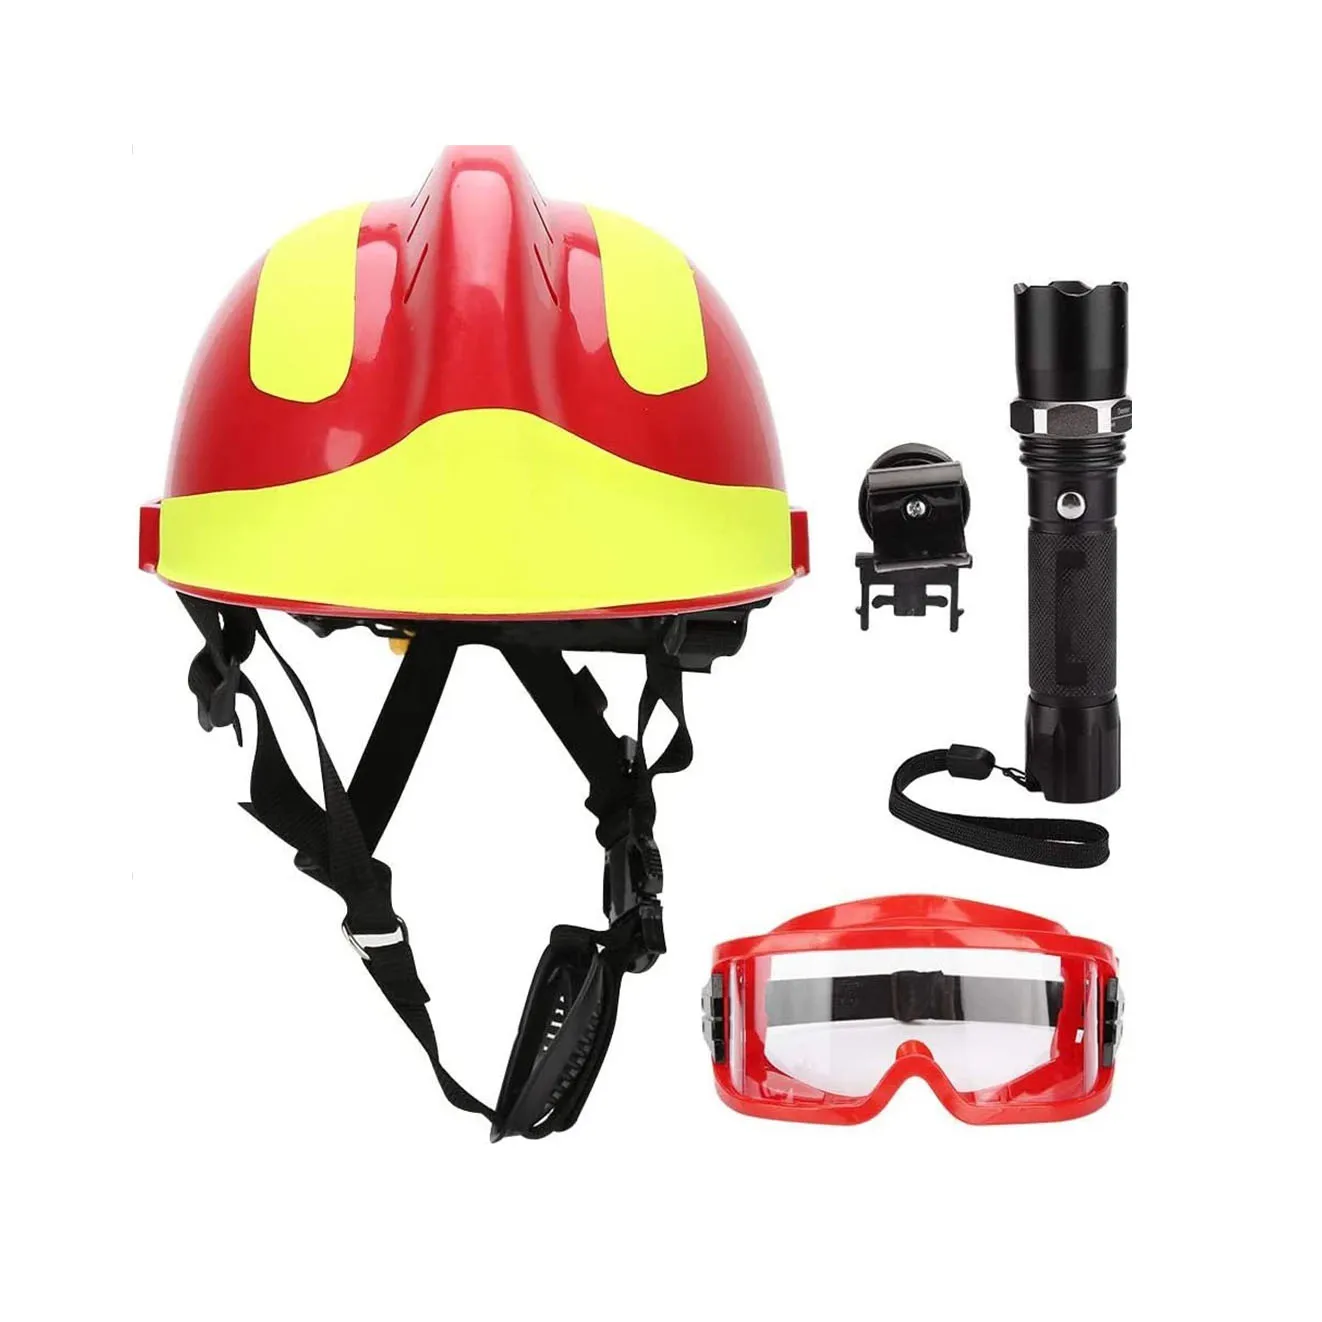 

CE Certified F2 Fireman cromwell f600 fire fighting Rescue helmet